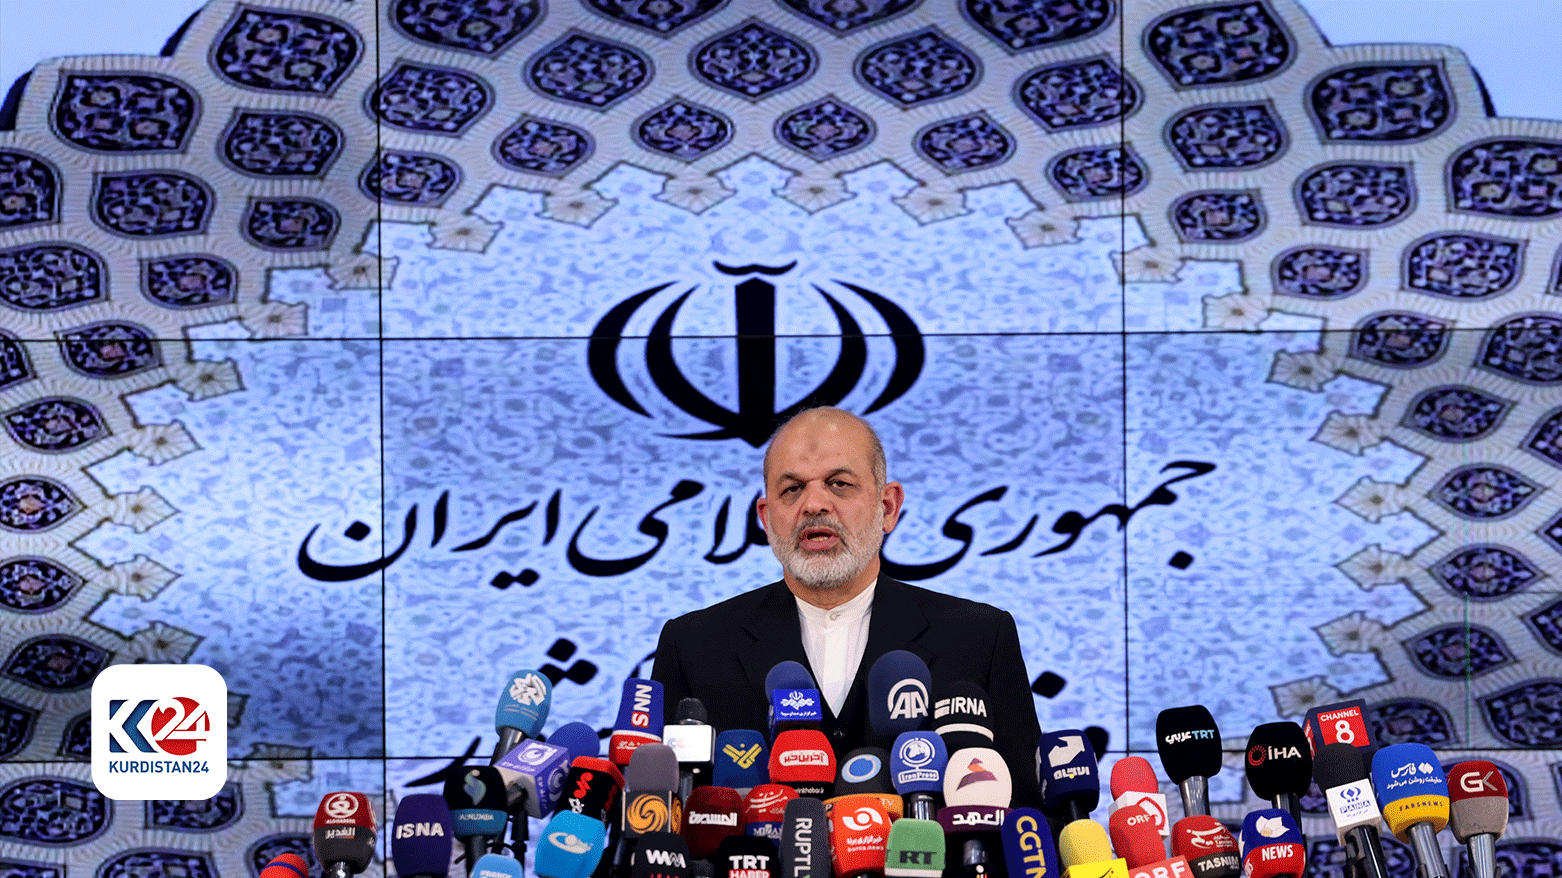 احمد وحیدی. وزیر کشور ایران در هنگام اعلام نتایج انتخابات - عکس: خبرگزاری فرانسه